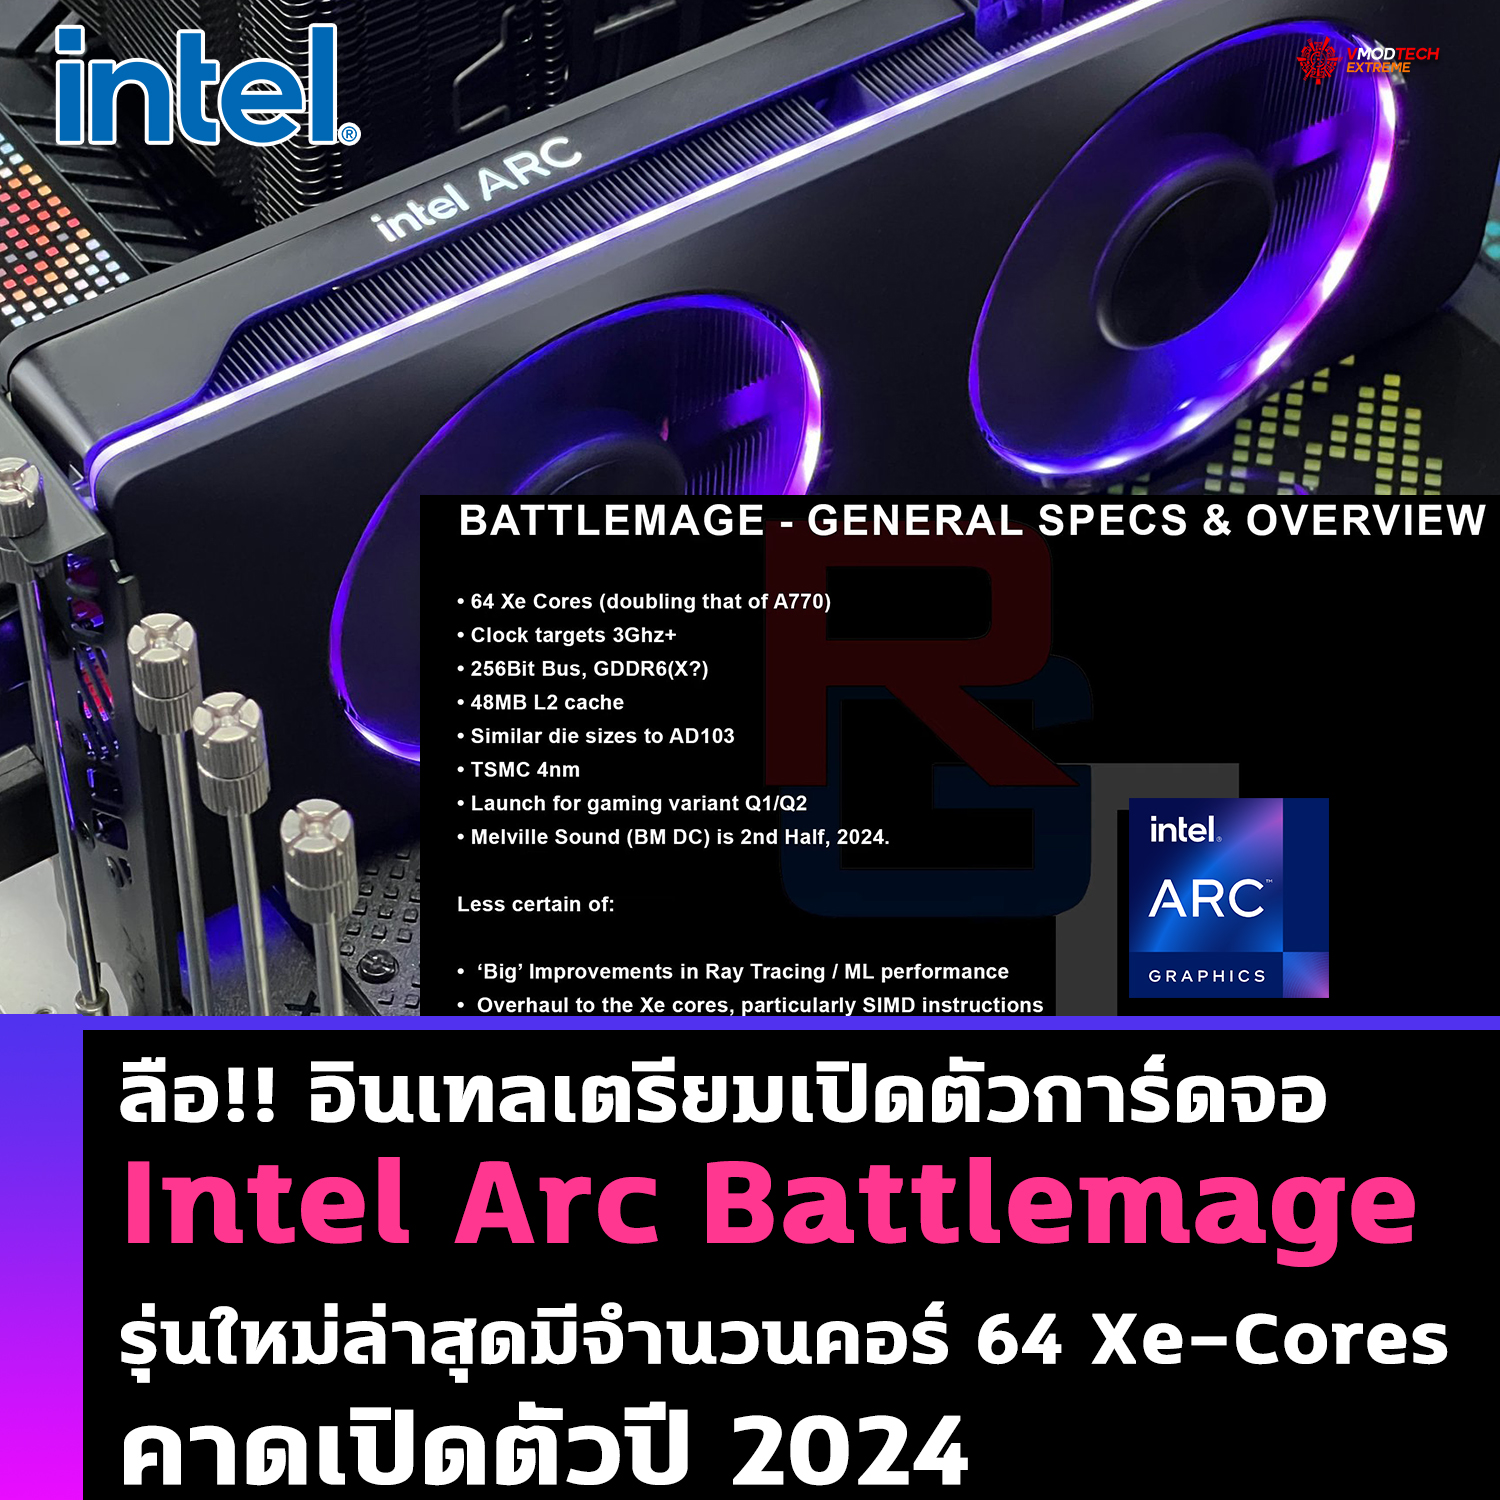 ลือ!! การ์ดจอ Intel Arc Battlemage รุ่นใหม่ล่าสุดมีจำนวนคอร์ 64 Xe-Cores